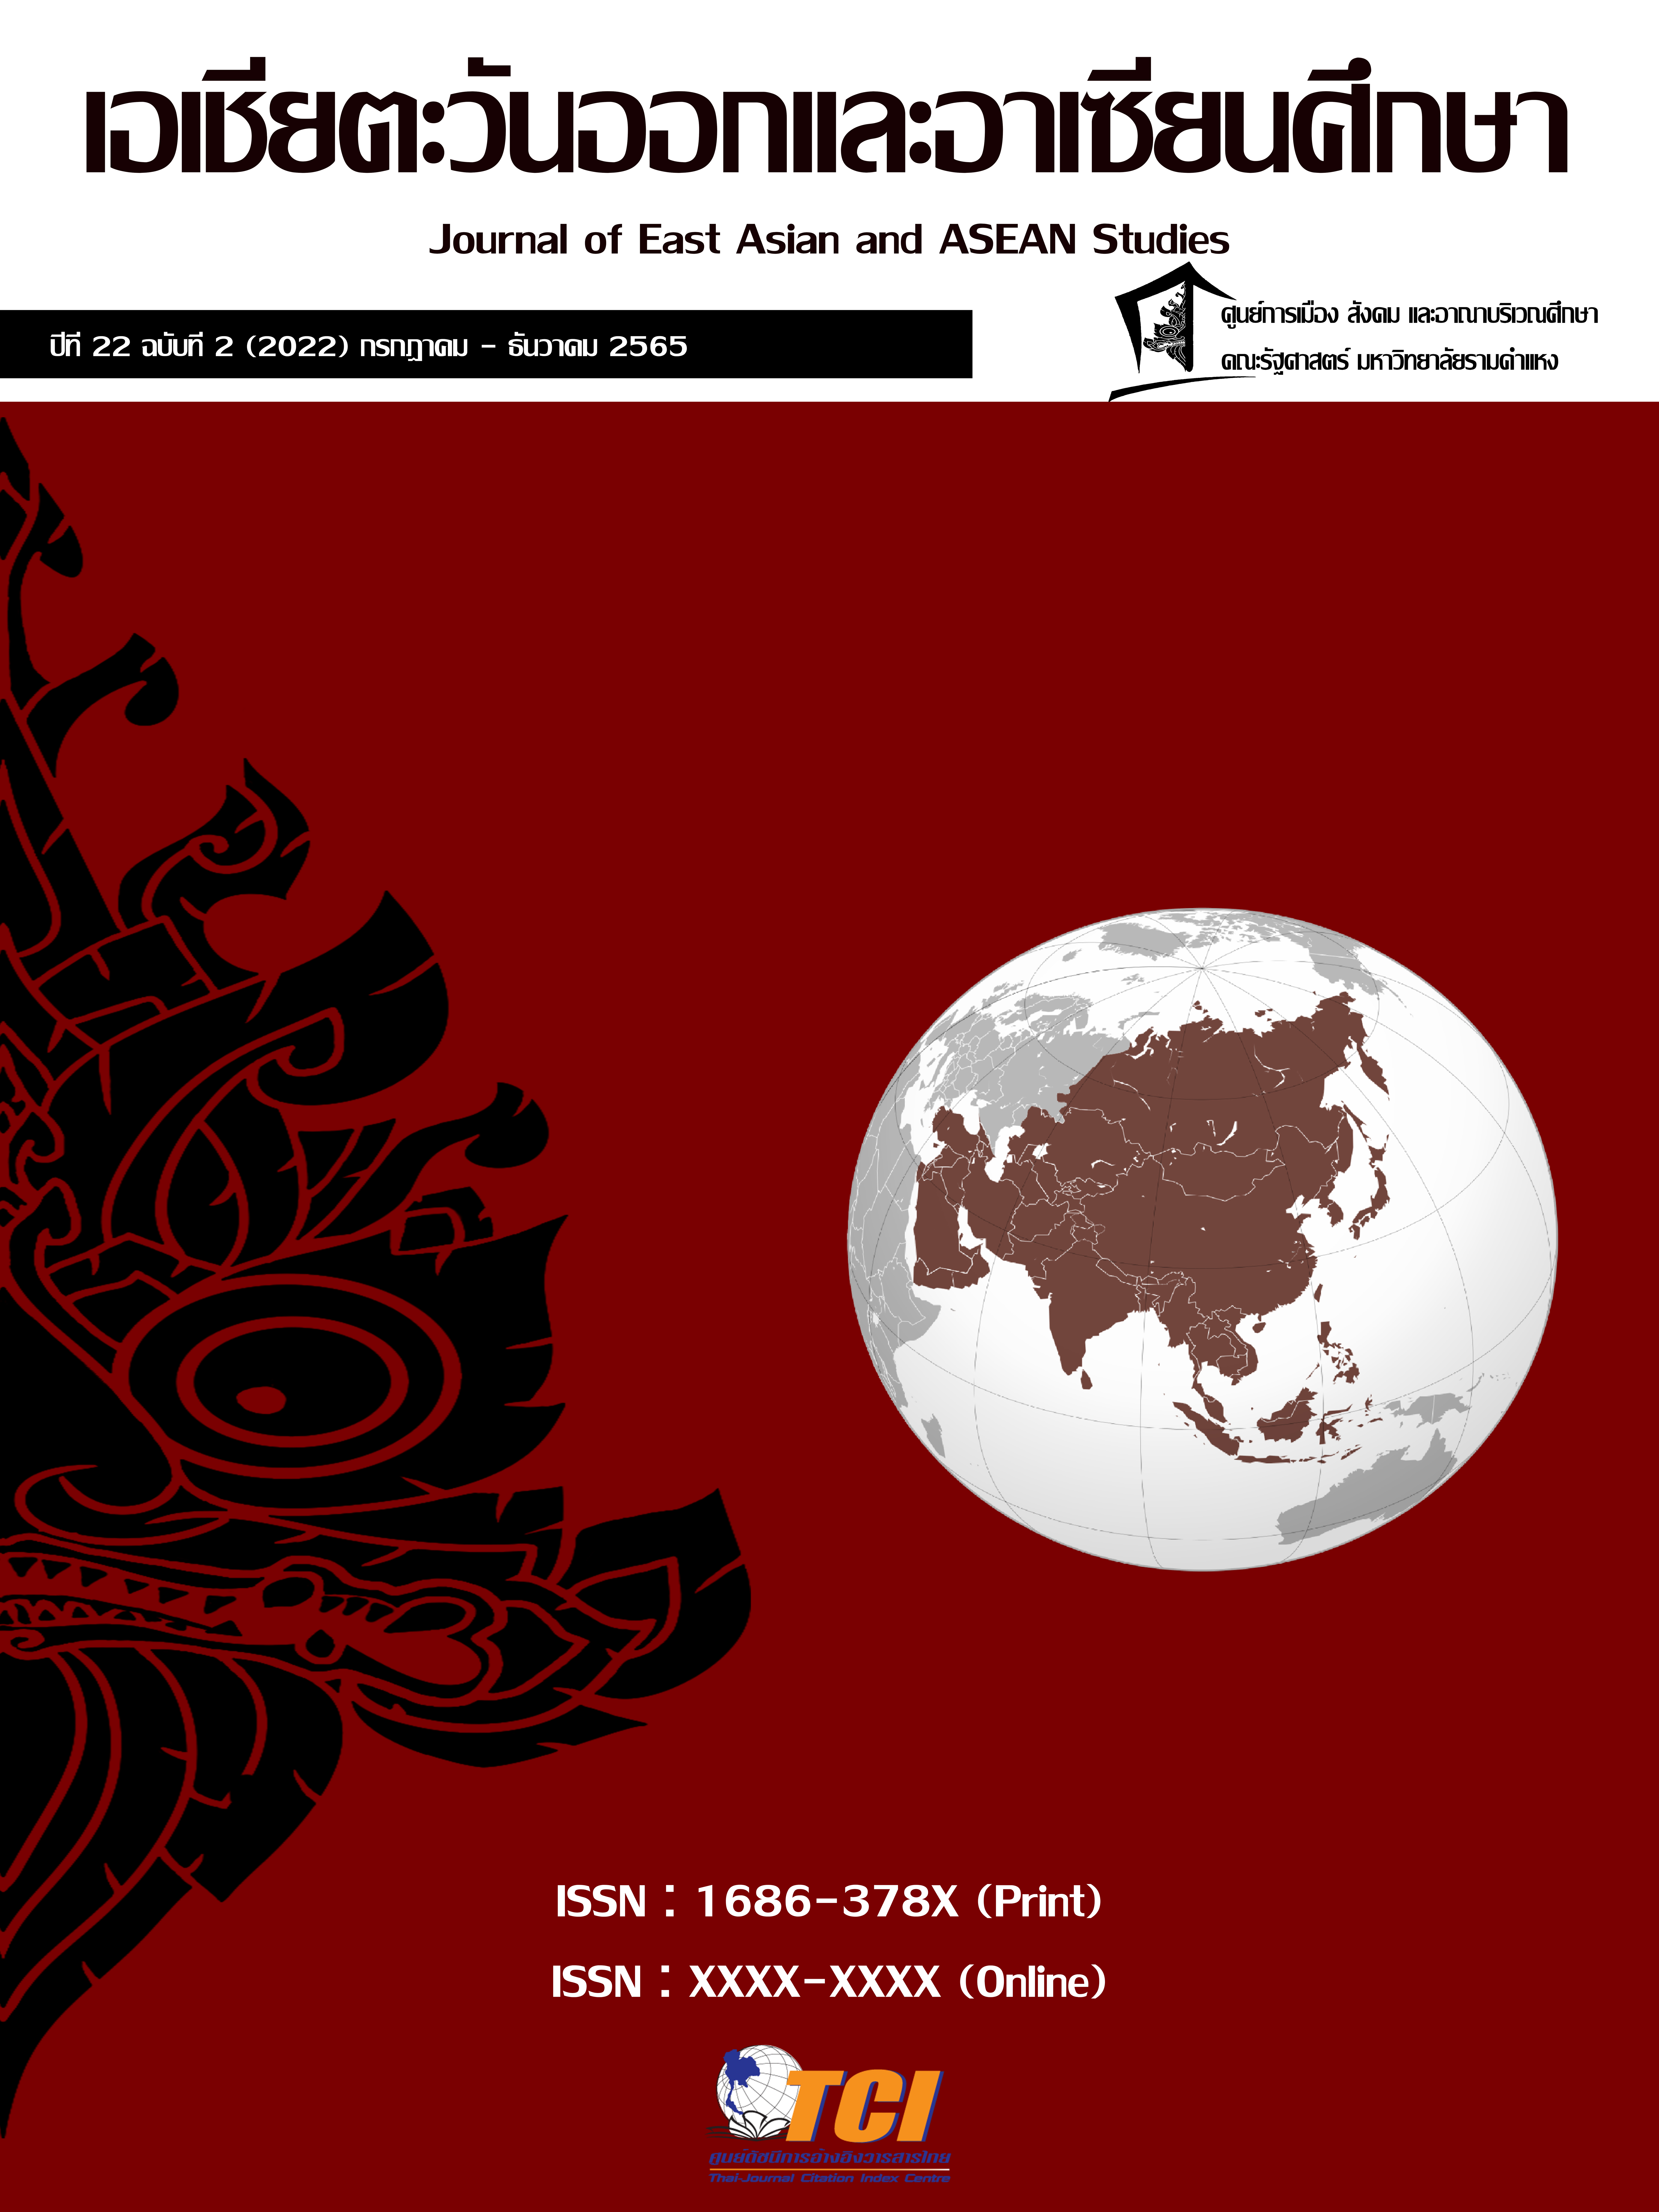 					ดู ปีที่ 22 ฉบับที่ 2 (2022): กรกฎาคม-ธันวาคม : วารสารเอเชียตะวันออกและอาเซียนศึกษา
				